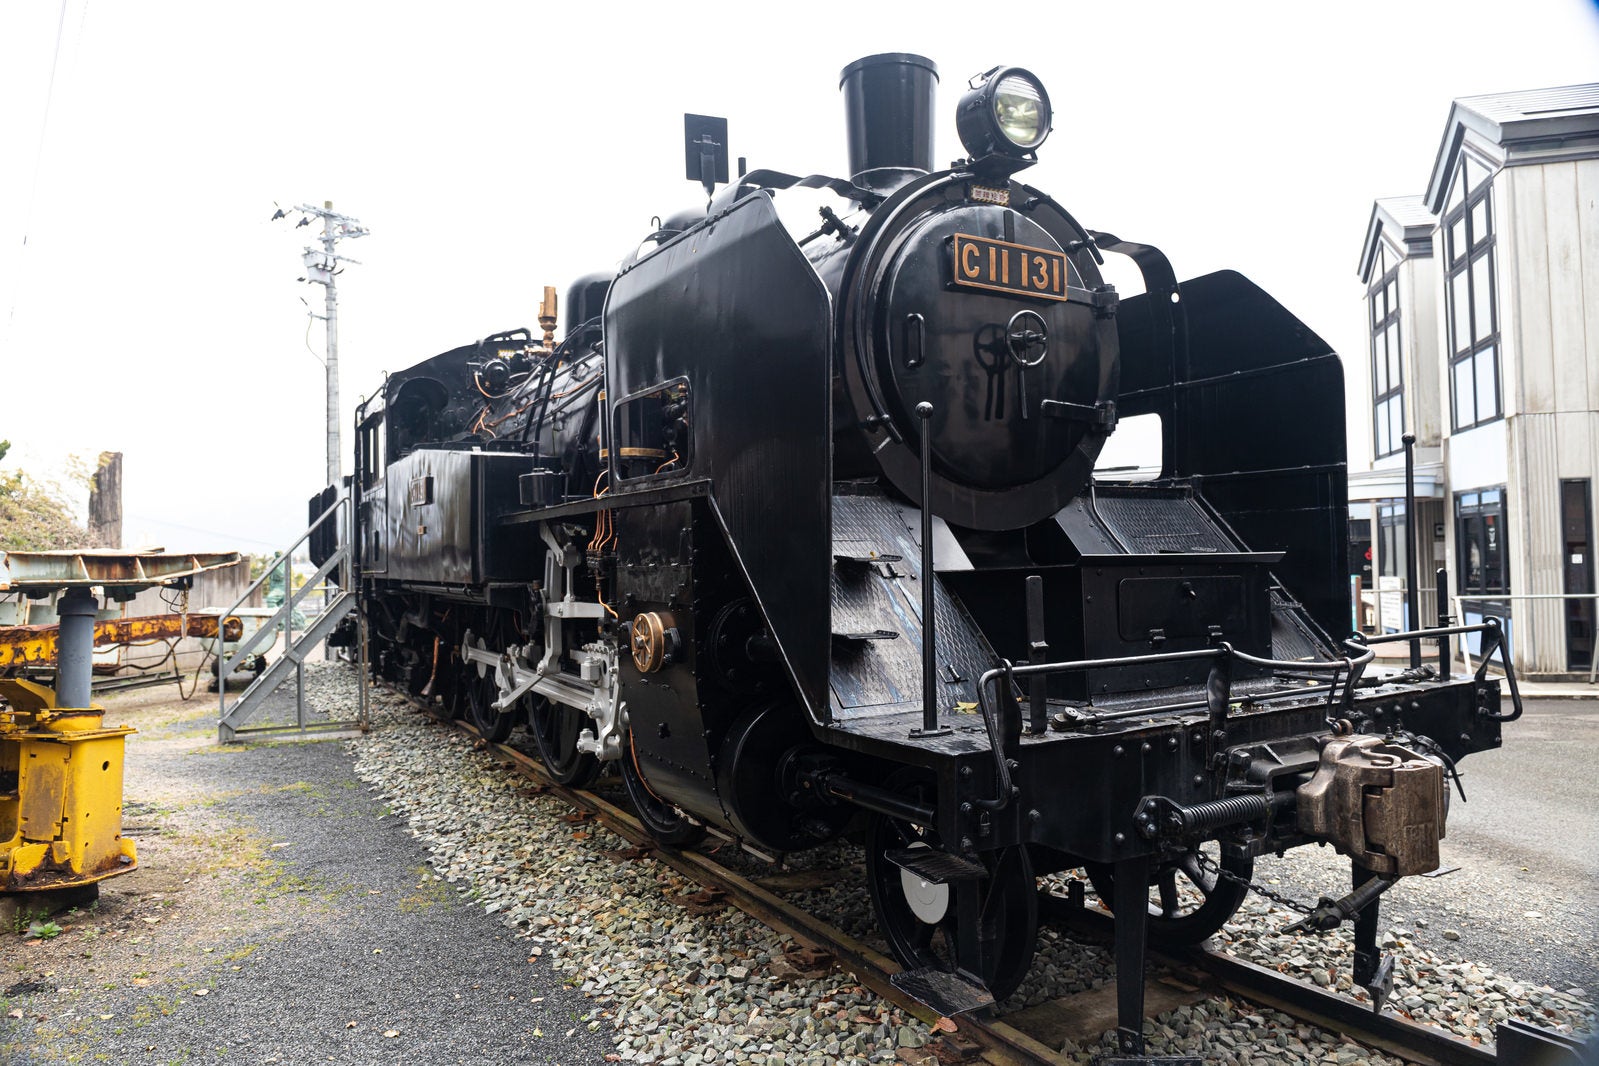 「直方市石炭記念館に展示されているC11131号蒸気機関車」の写真